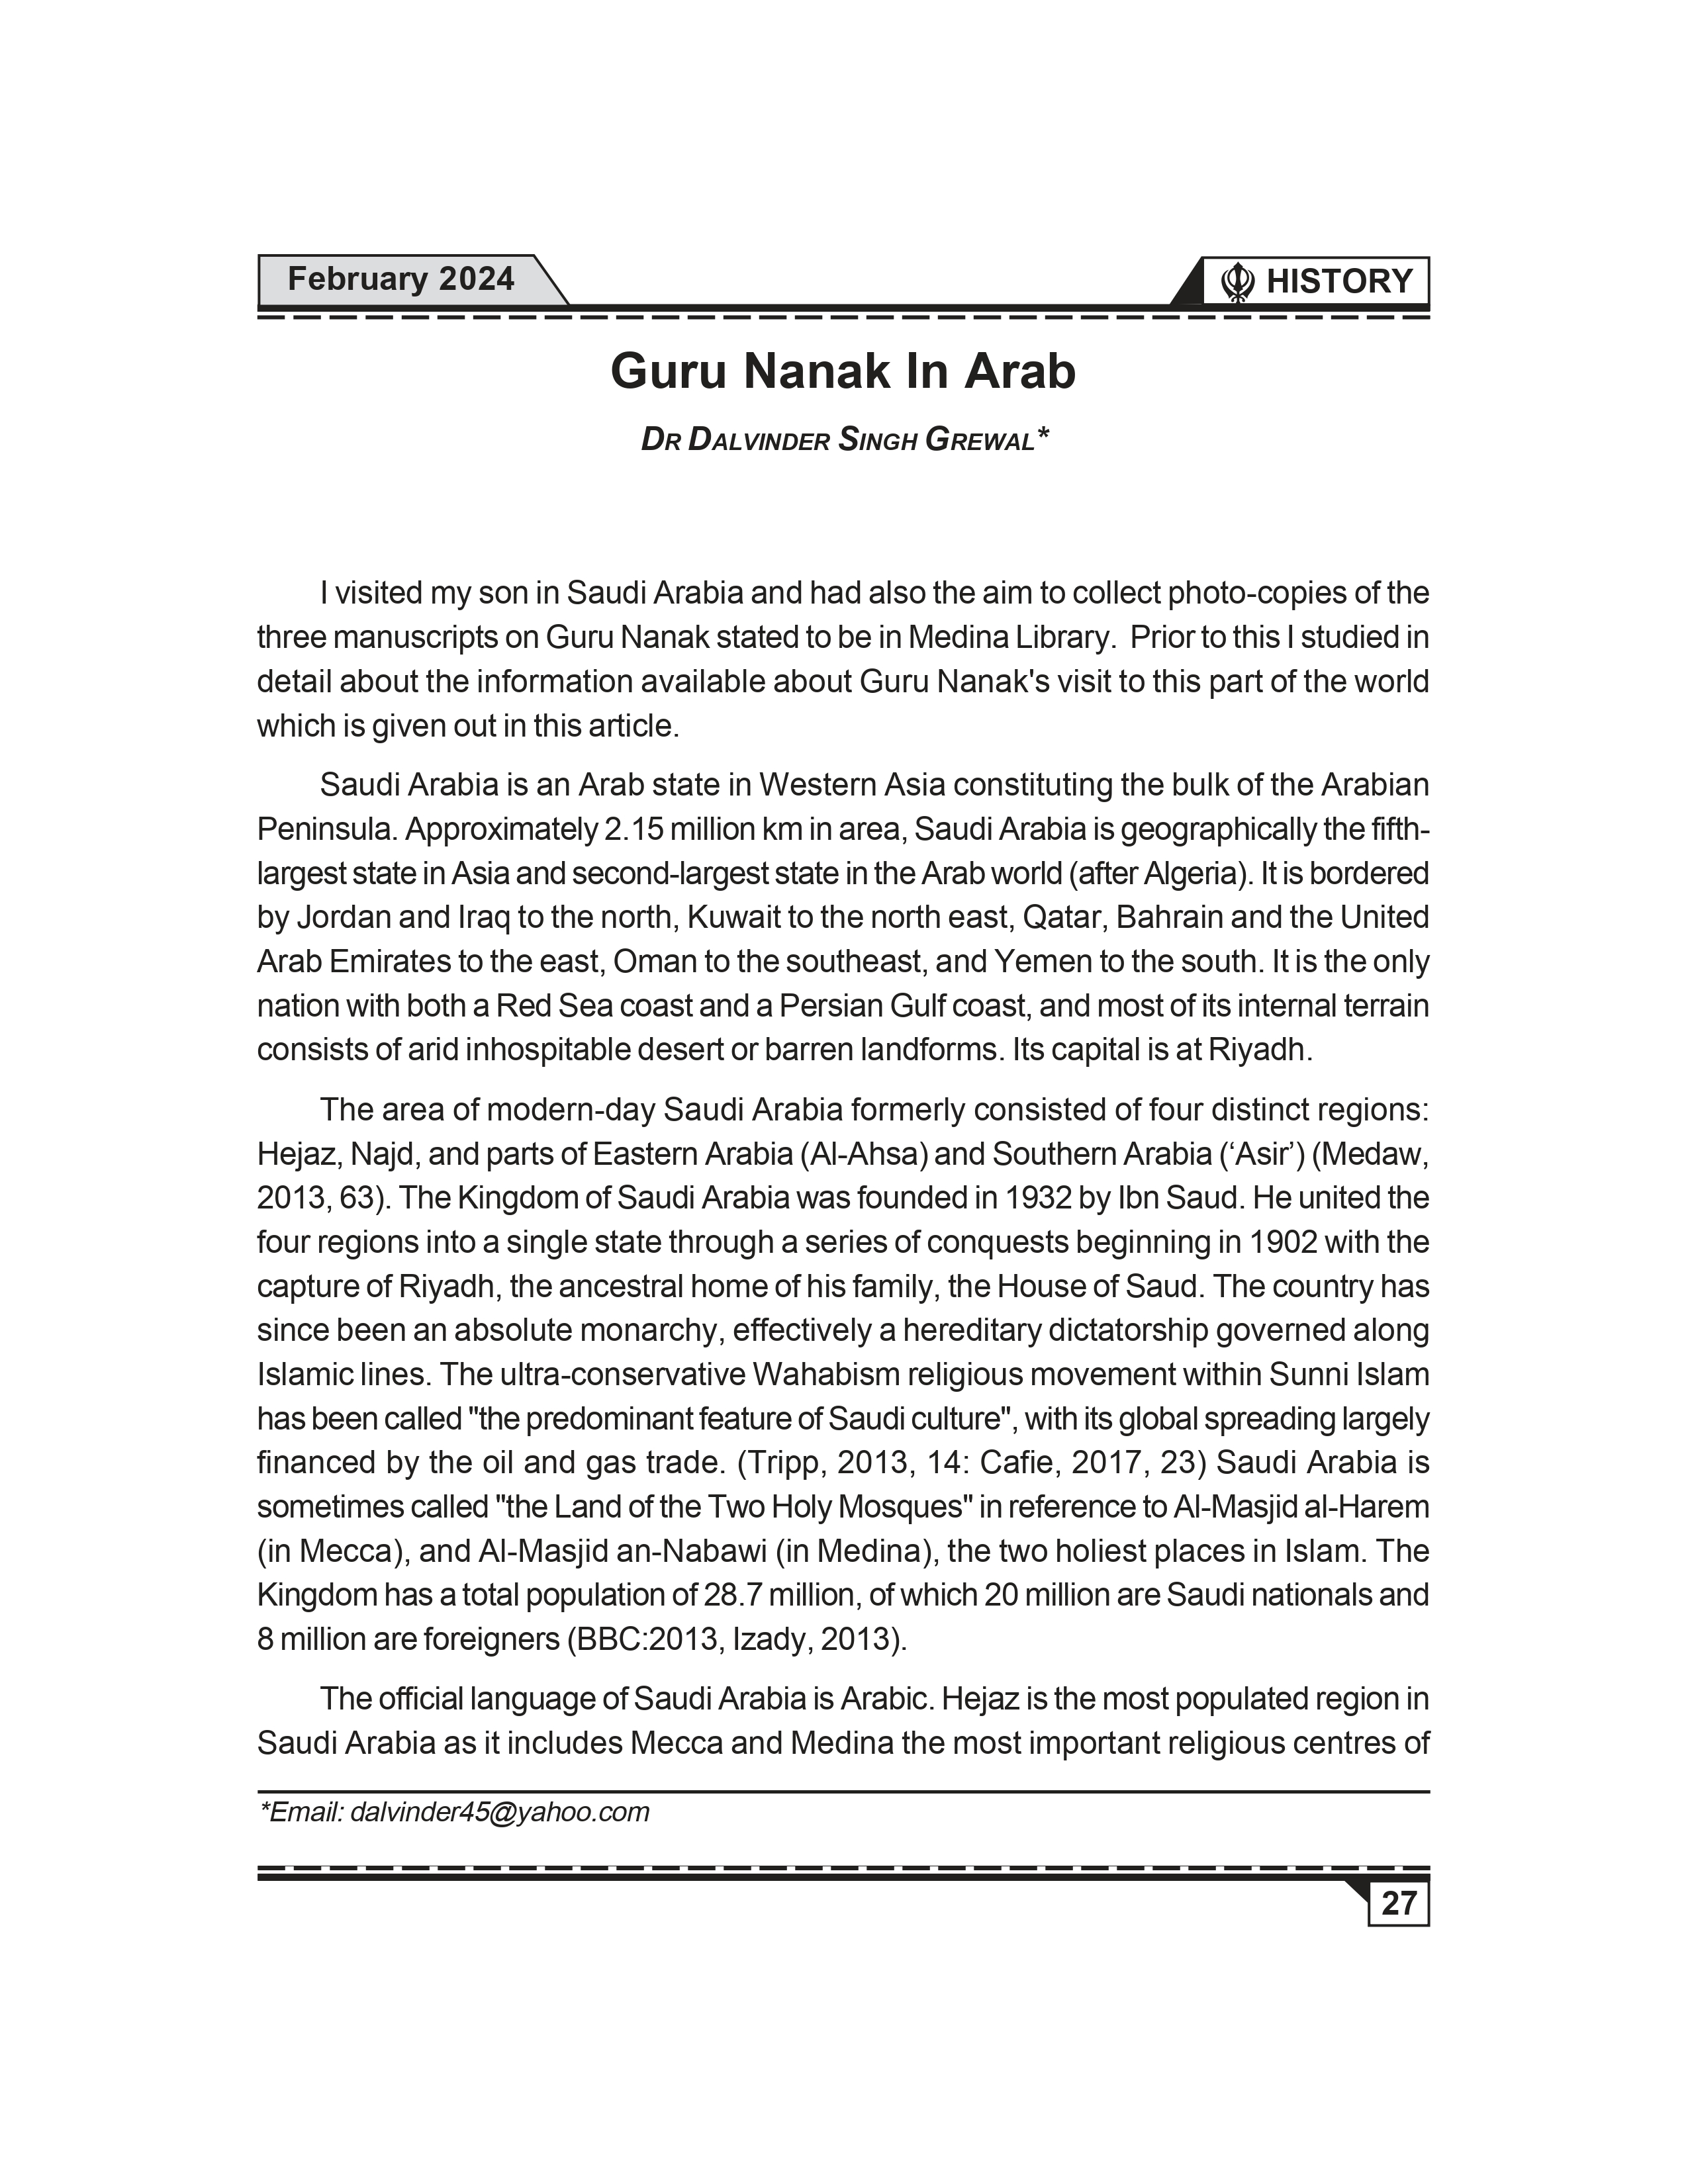 DS GREWAL SIKH REVIEW GURU NANAK IN ARAB WORLD_pages-to-jpg-0002.jpg